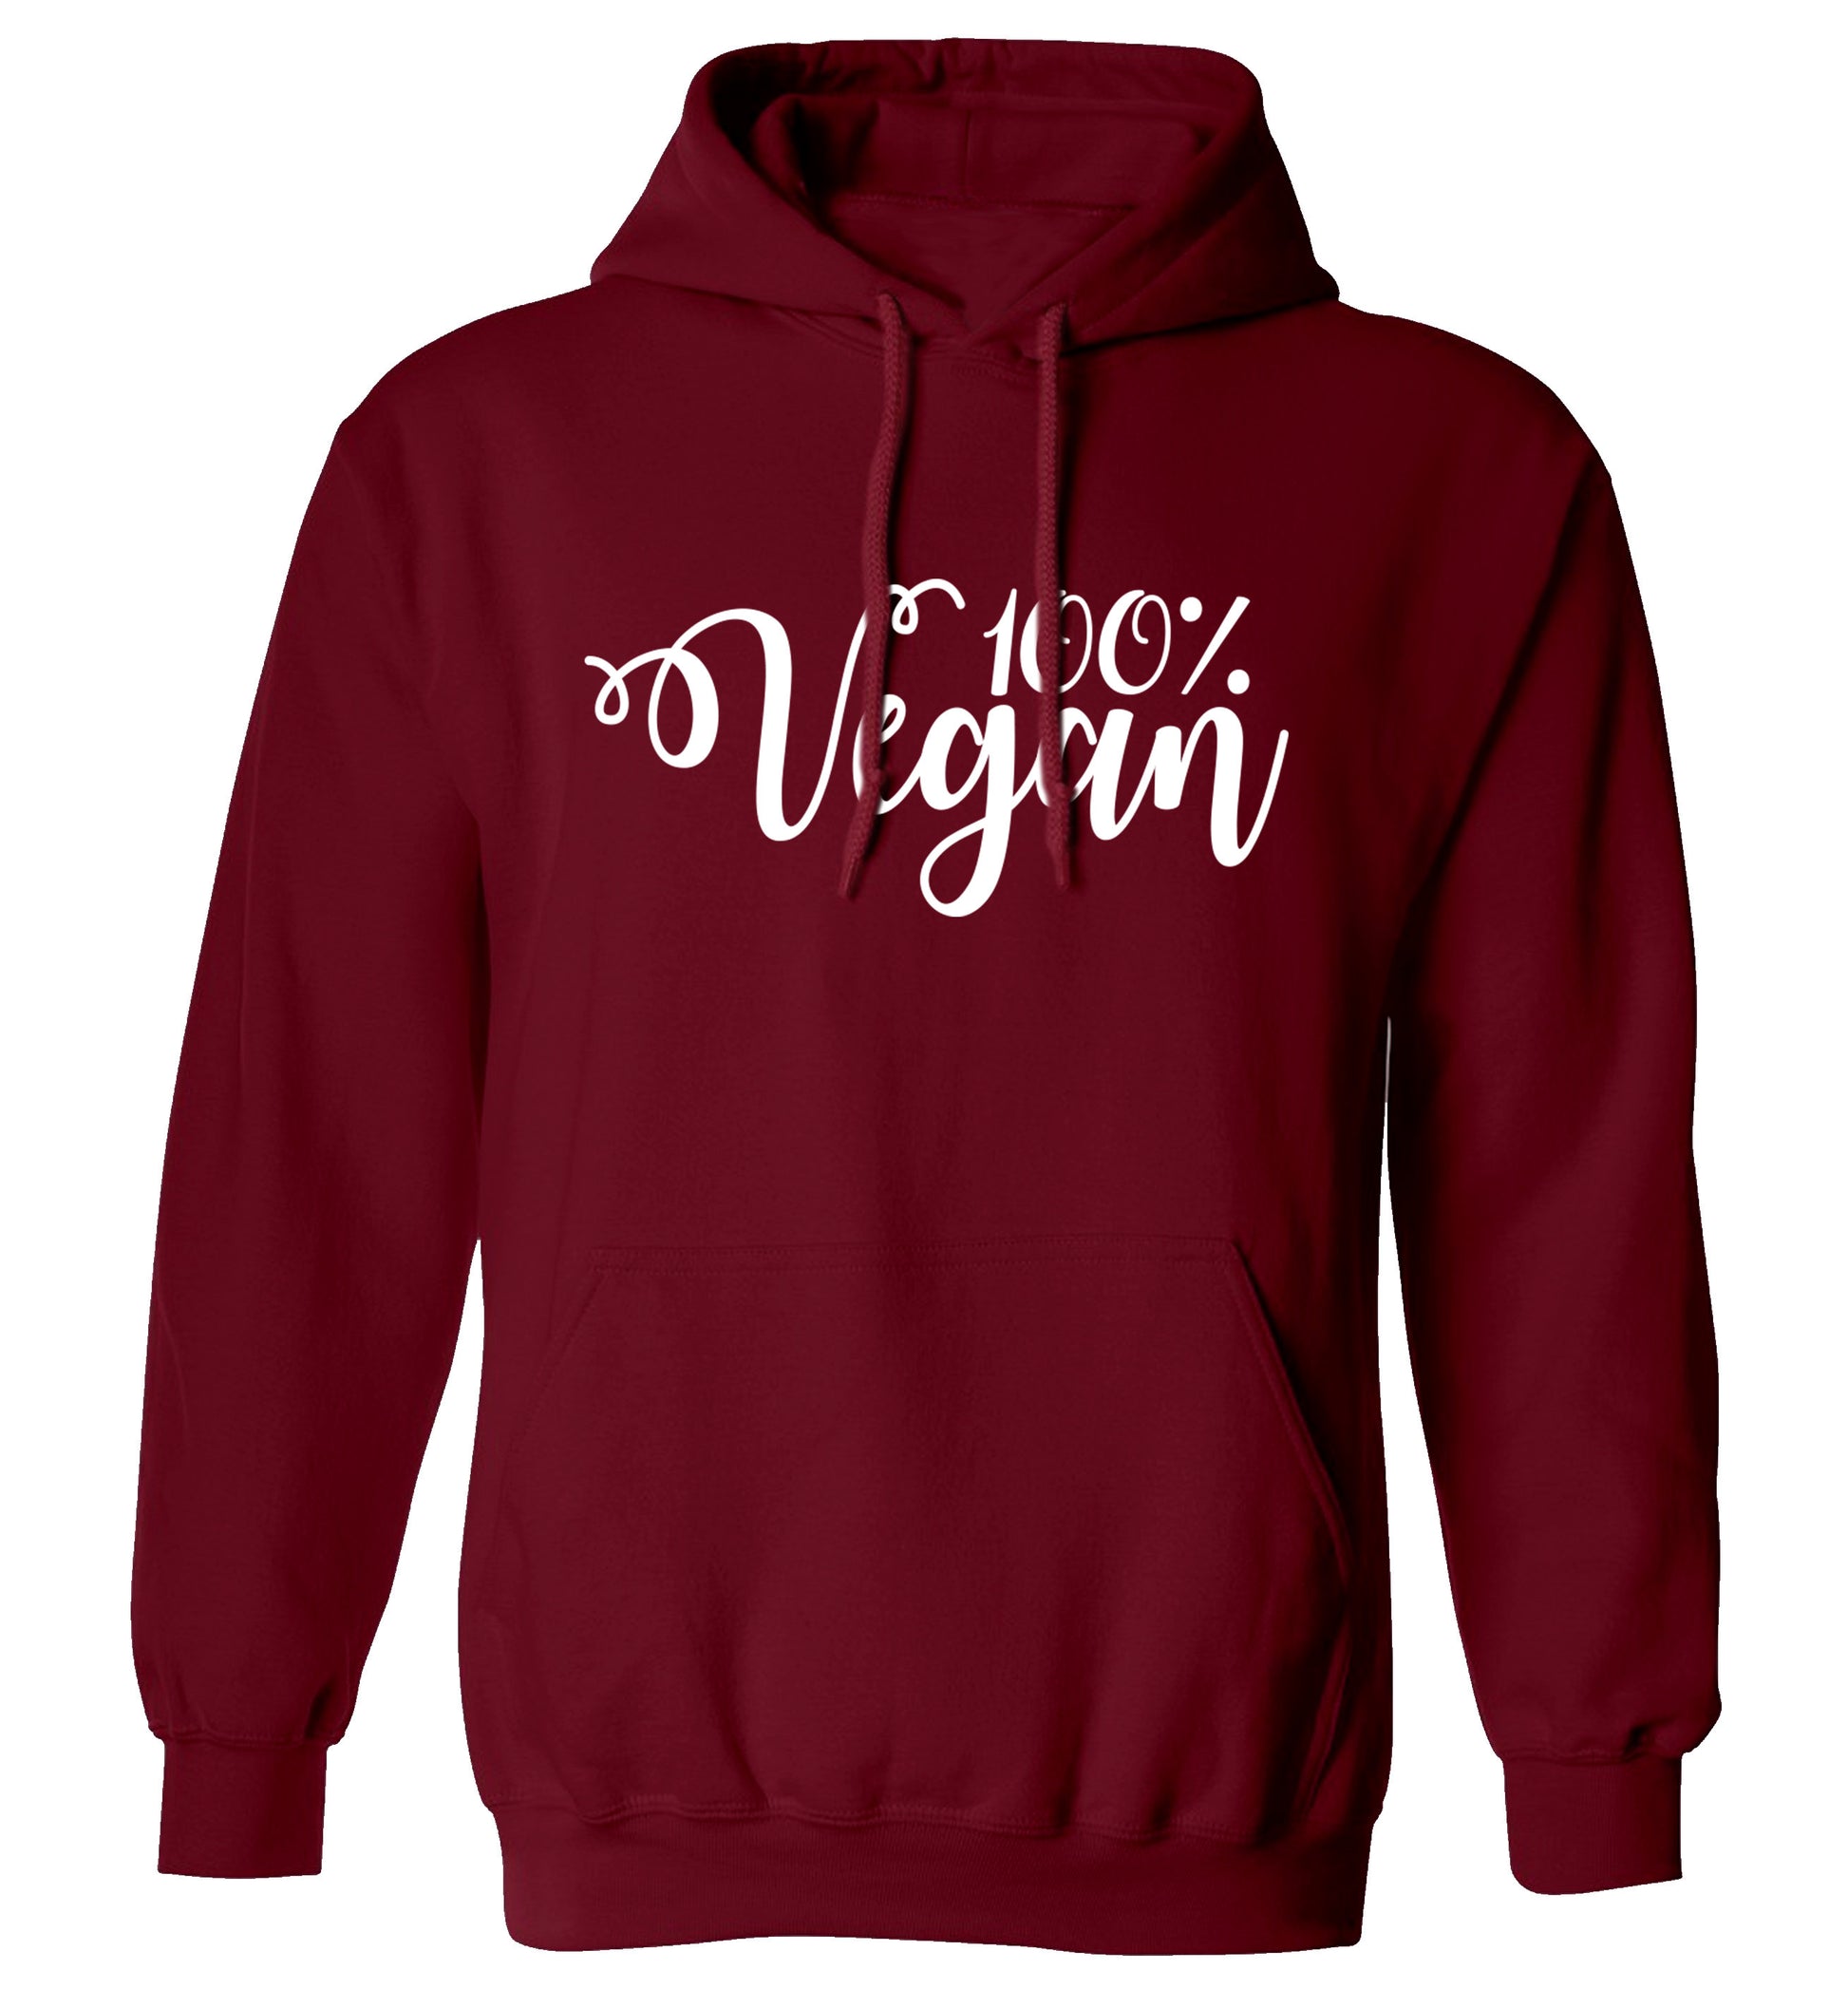 100% Vegan adults unisex maroon hoodie 2XL